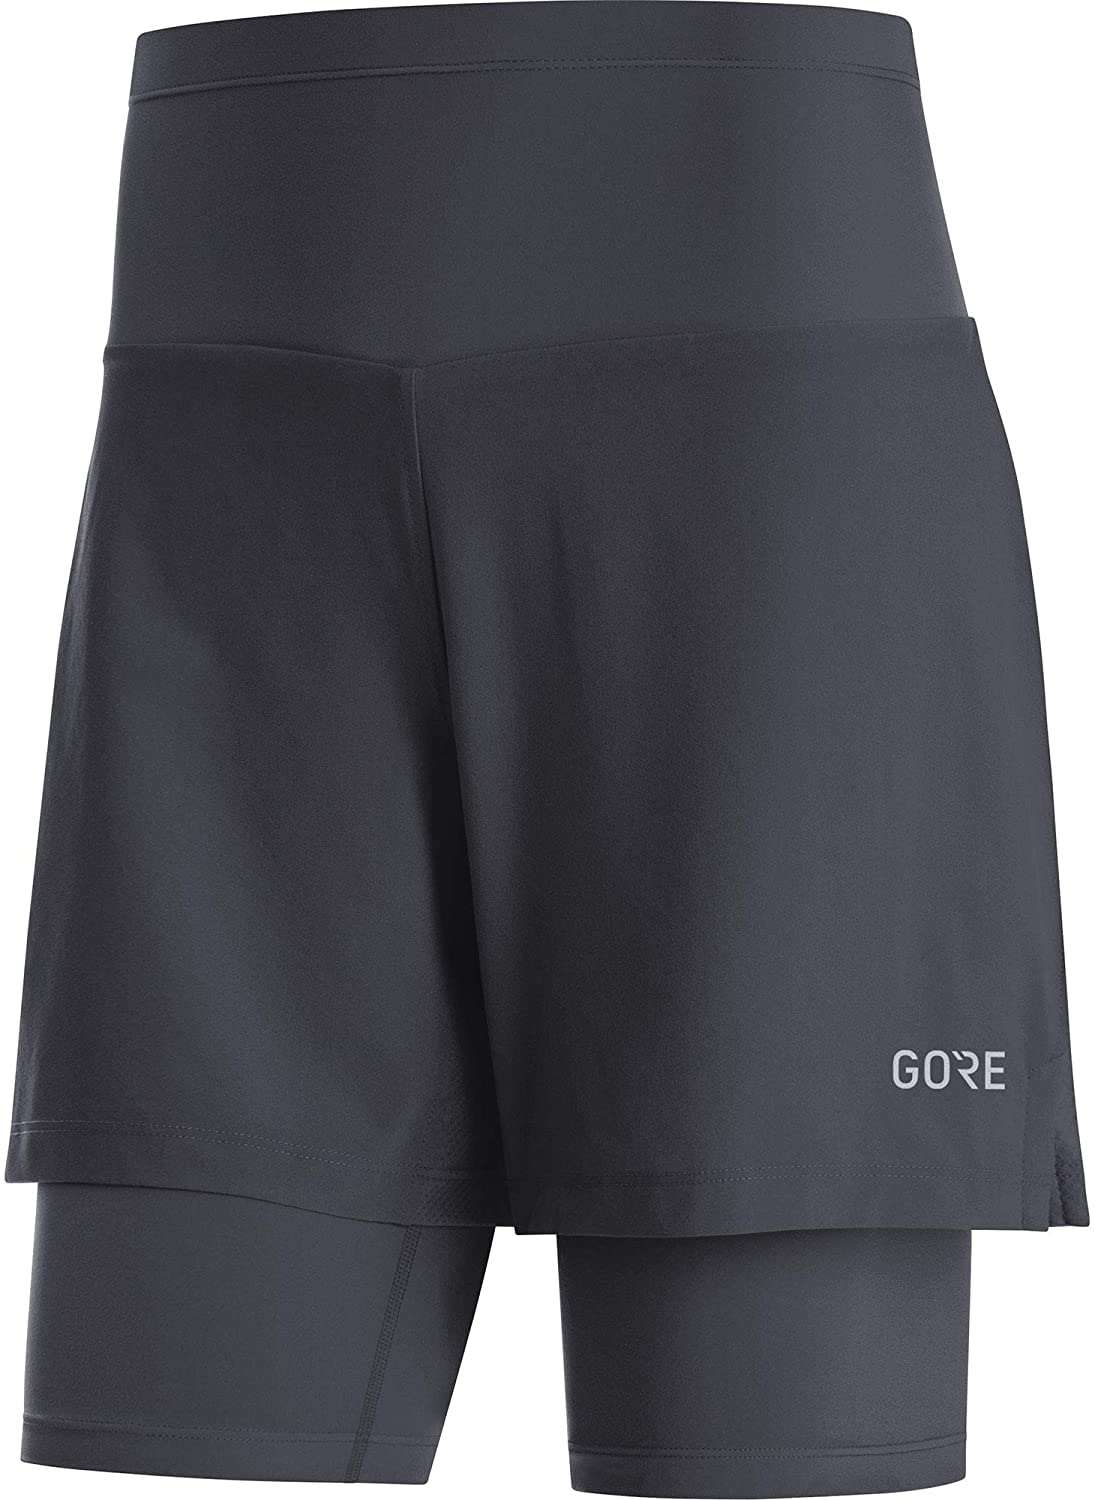 Gore Wear R5 2in1 Shorts - Pantaloncini running - Donna